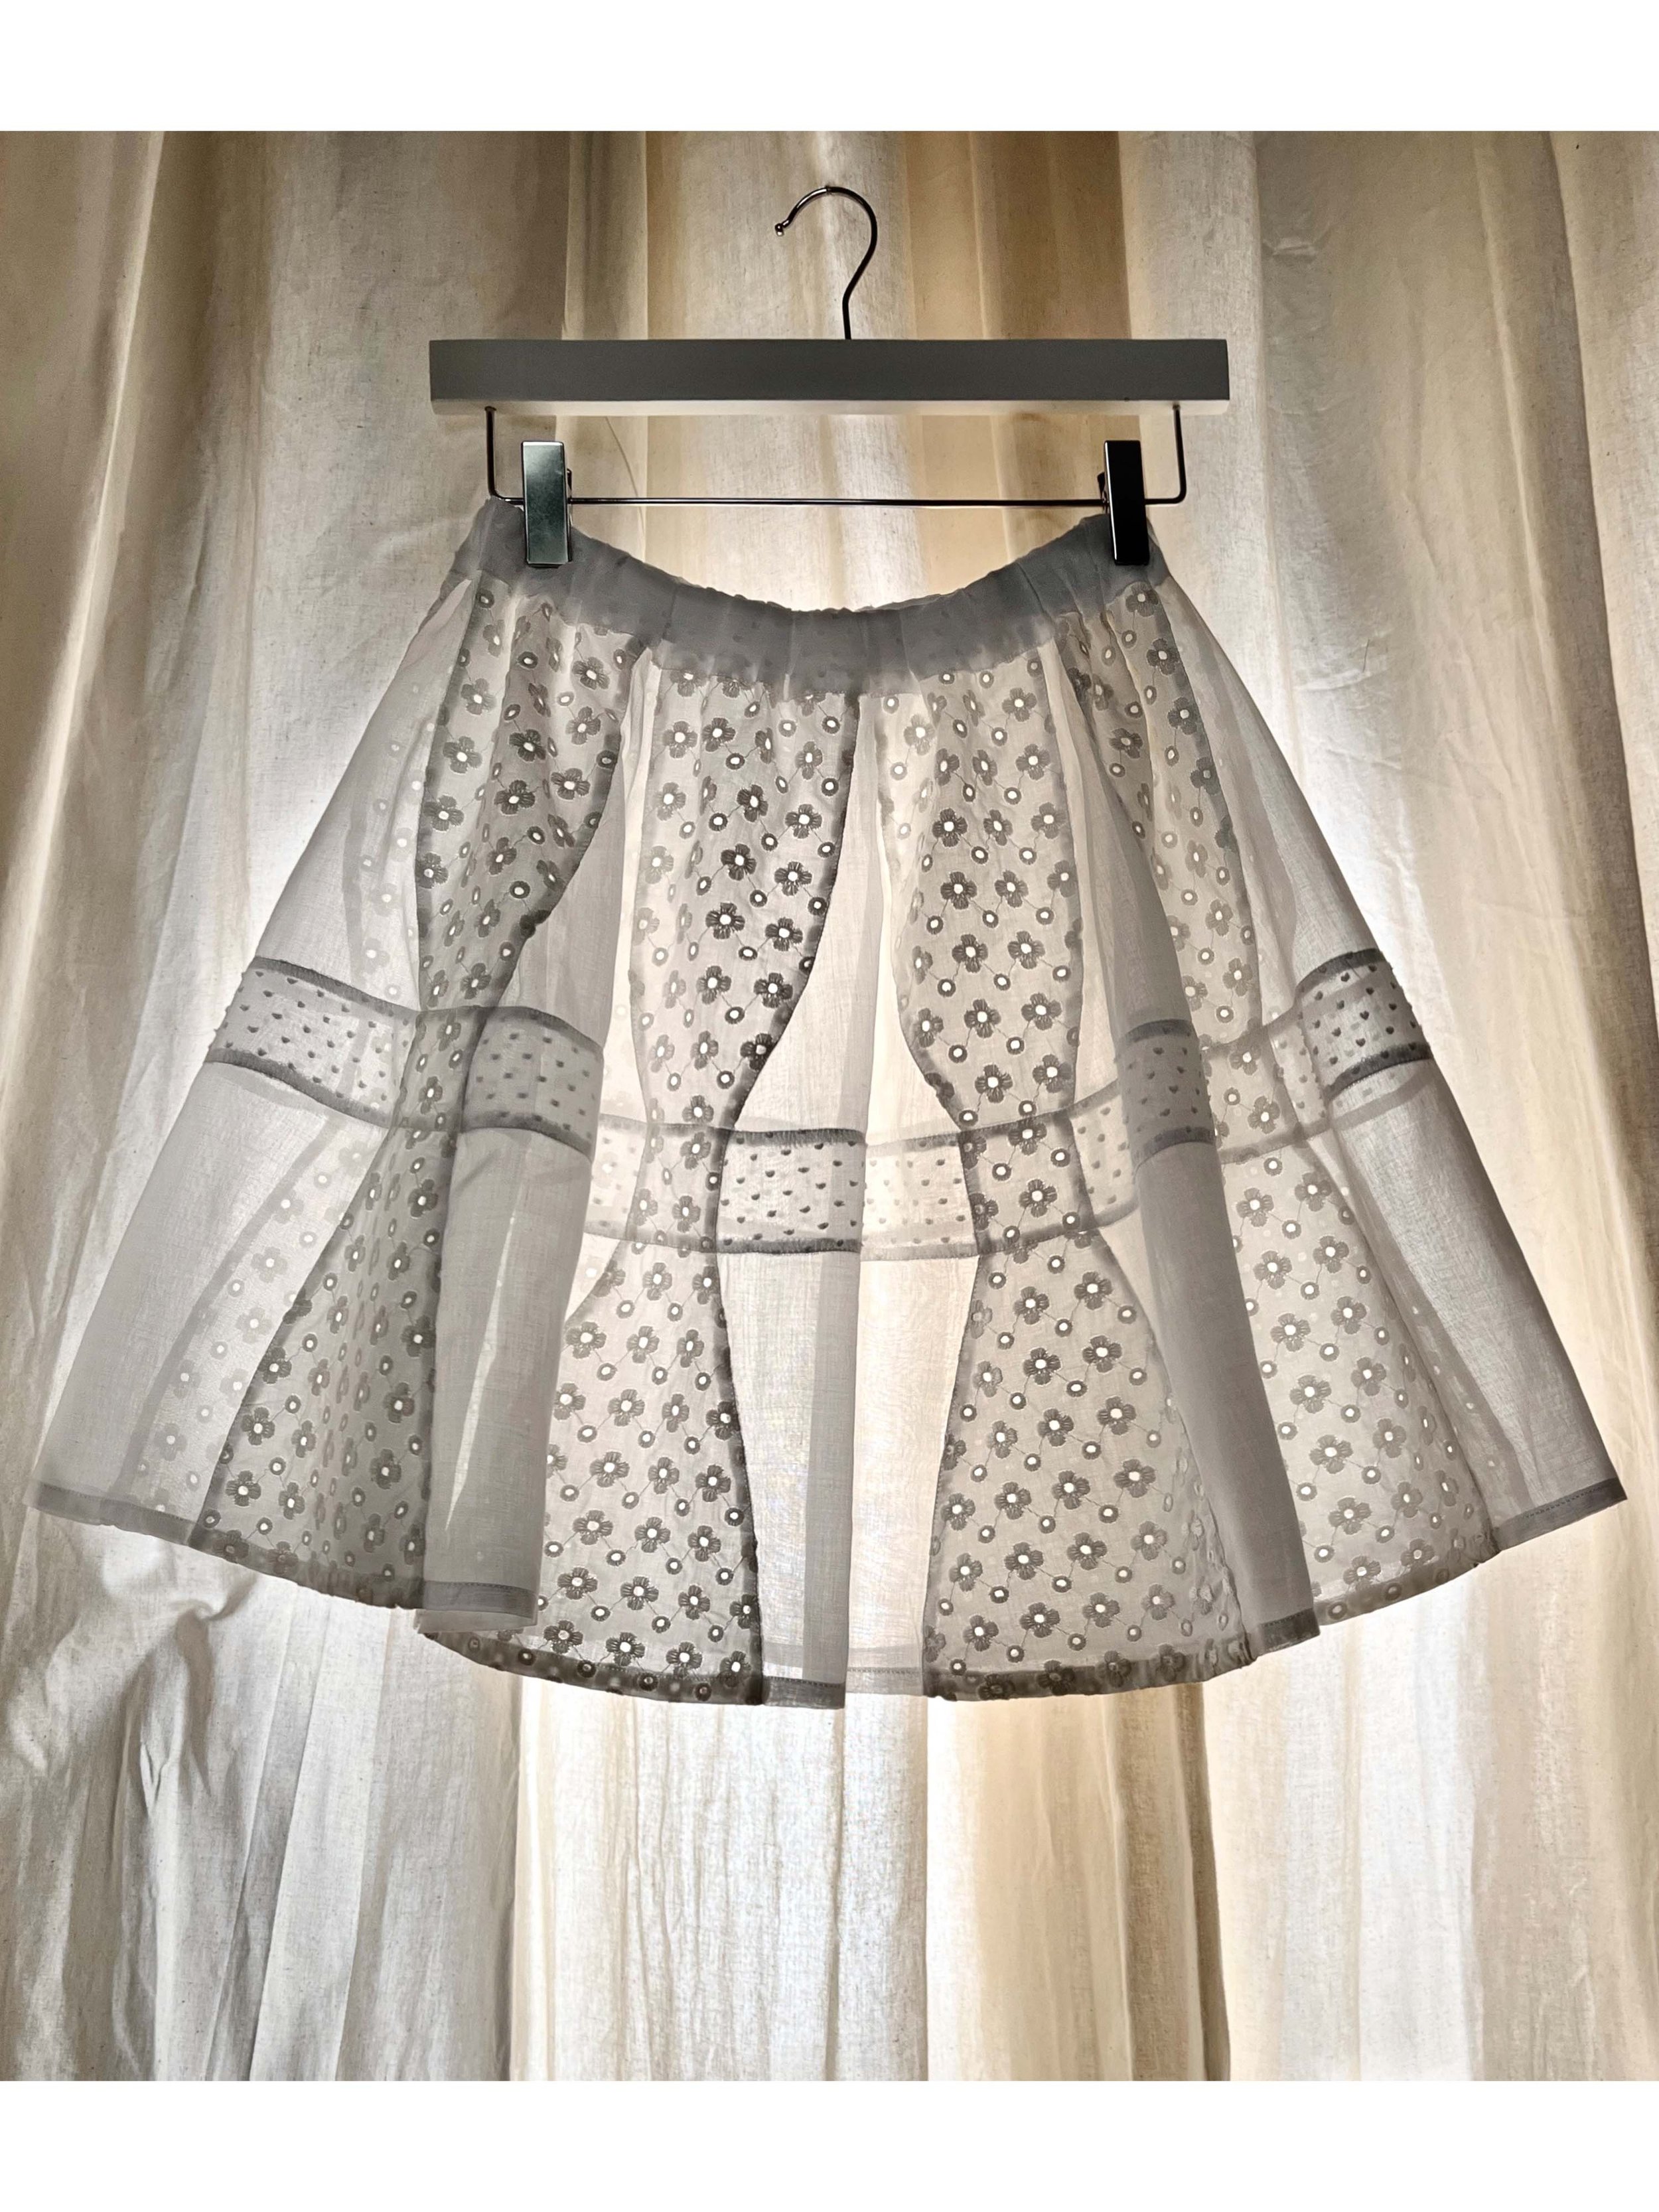 Bow Patchwork Short Skirt - Product shot _3k_4k.jpg